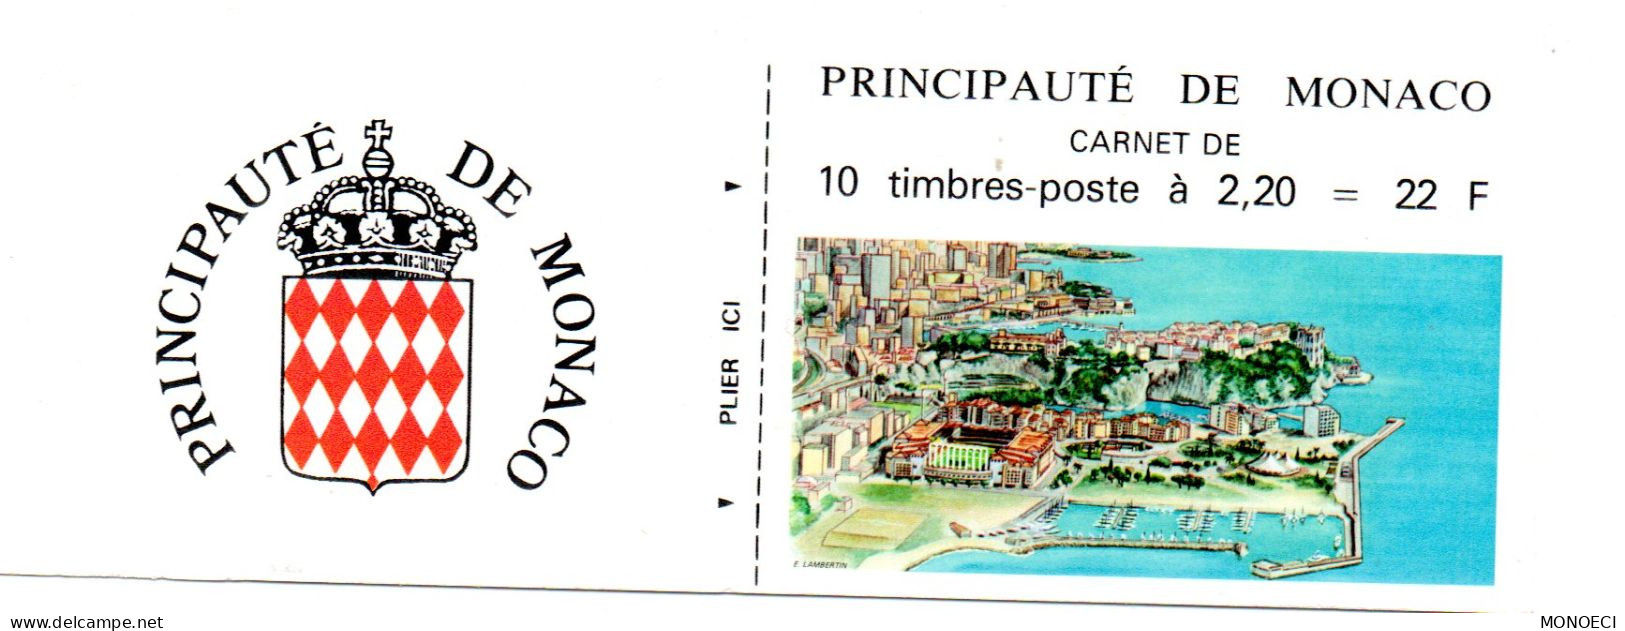 MONACO --  Monégasque -- Carnet -- Timbres 2,20 Francs 1987 -- Armoiries Stylisées - Carnets